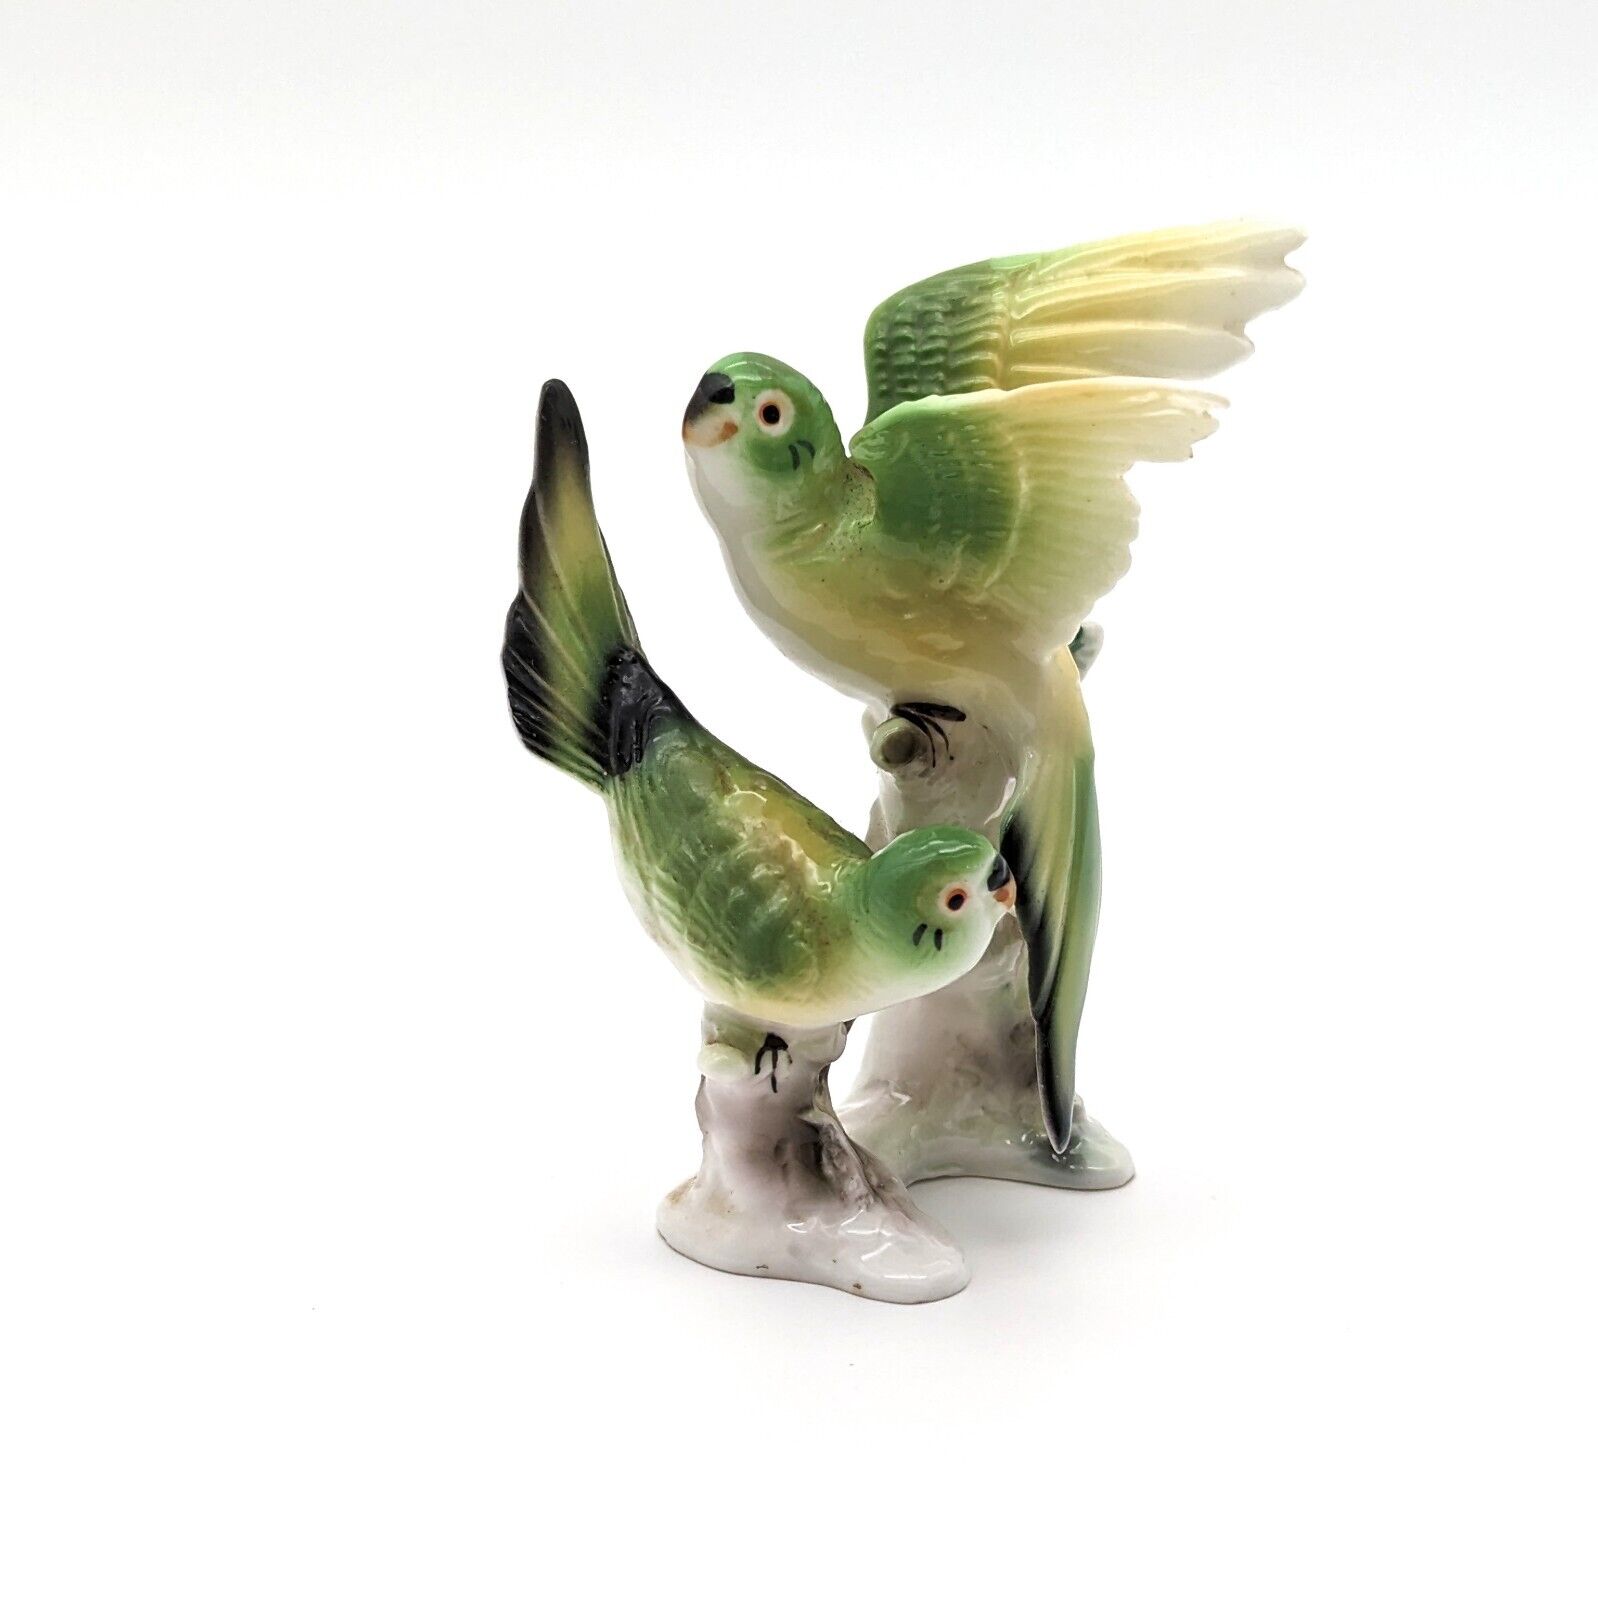 Vintage Figurine Lovebirds Parakeets Birds Delicate Porcelain Pre-Owned Japan?